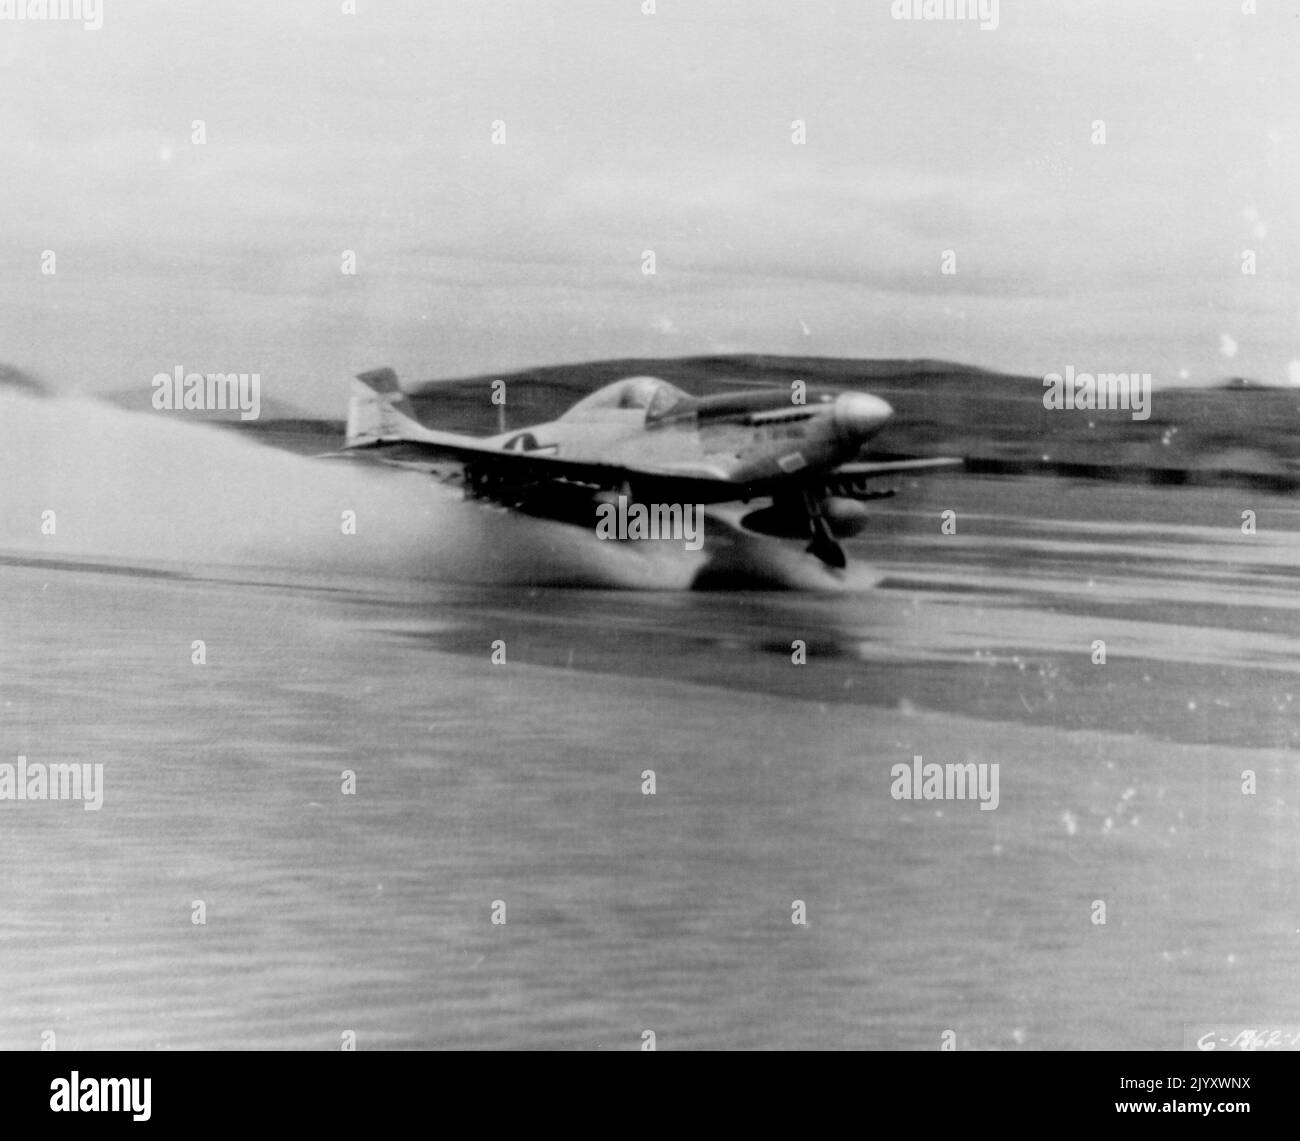 Wassergefahr -- ein Luftwaffenstützpunkt in Korea -- Wasser, das die gestreifte Stahlbahn bedeckt, stellte eine Gefahr für F-51 Mustangs des 18. Fighter Bomber Wings der Fünften Luftwaffe dar, konnte aber nicht verhindern, dass die schnellen Kampfflugzeuge zu Kampfeinsätzen startten. Hier ist eine mit Raketen und Napalm beladene Absetzung zu sehen, um einen weiteren strafenden Schlag gegen rote Ziele in Nordkorea zu verjagen. 14. August 1951. (Foto der US Air Force Photo). Stockfoto